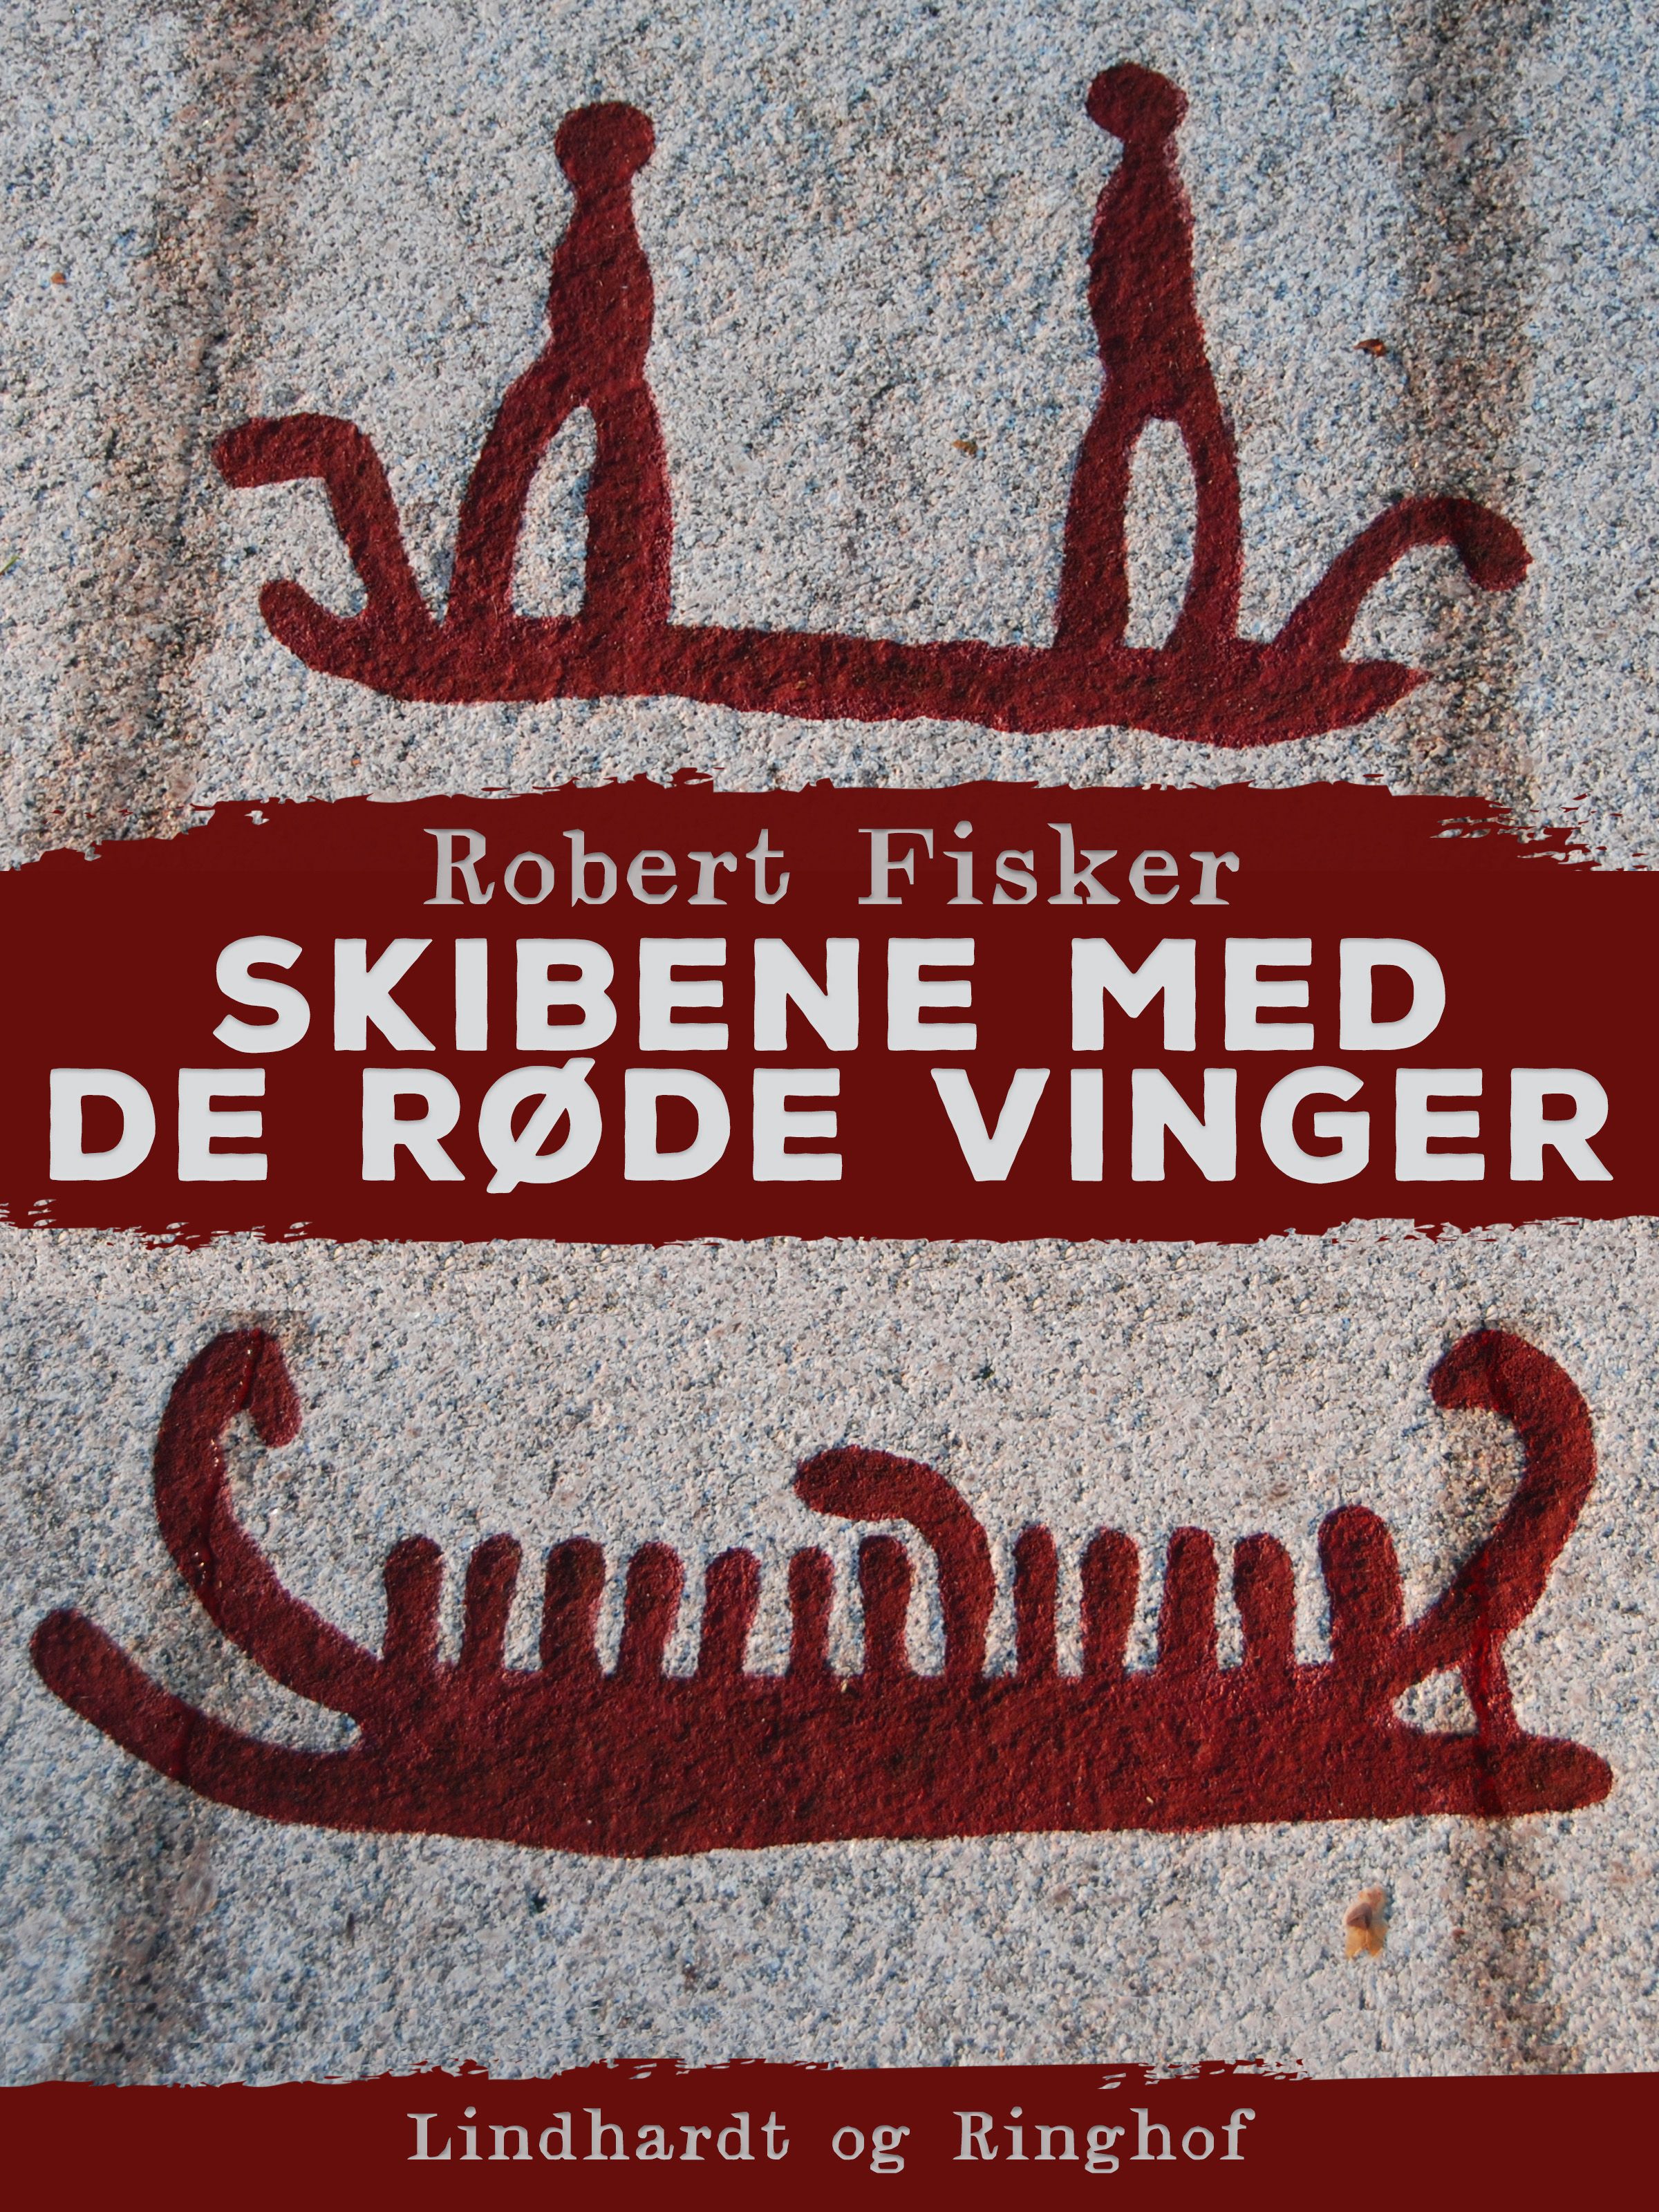 Skibene med de røde vinger, lydbog af Robert Fisker